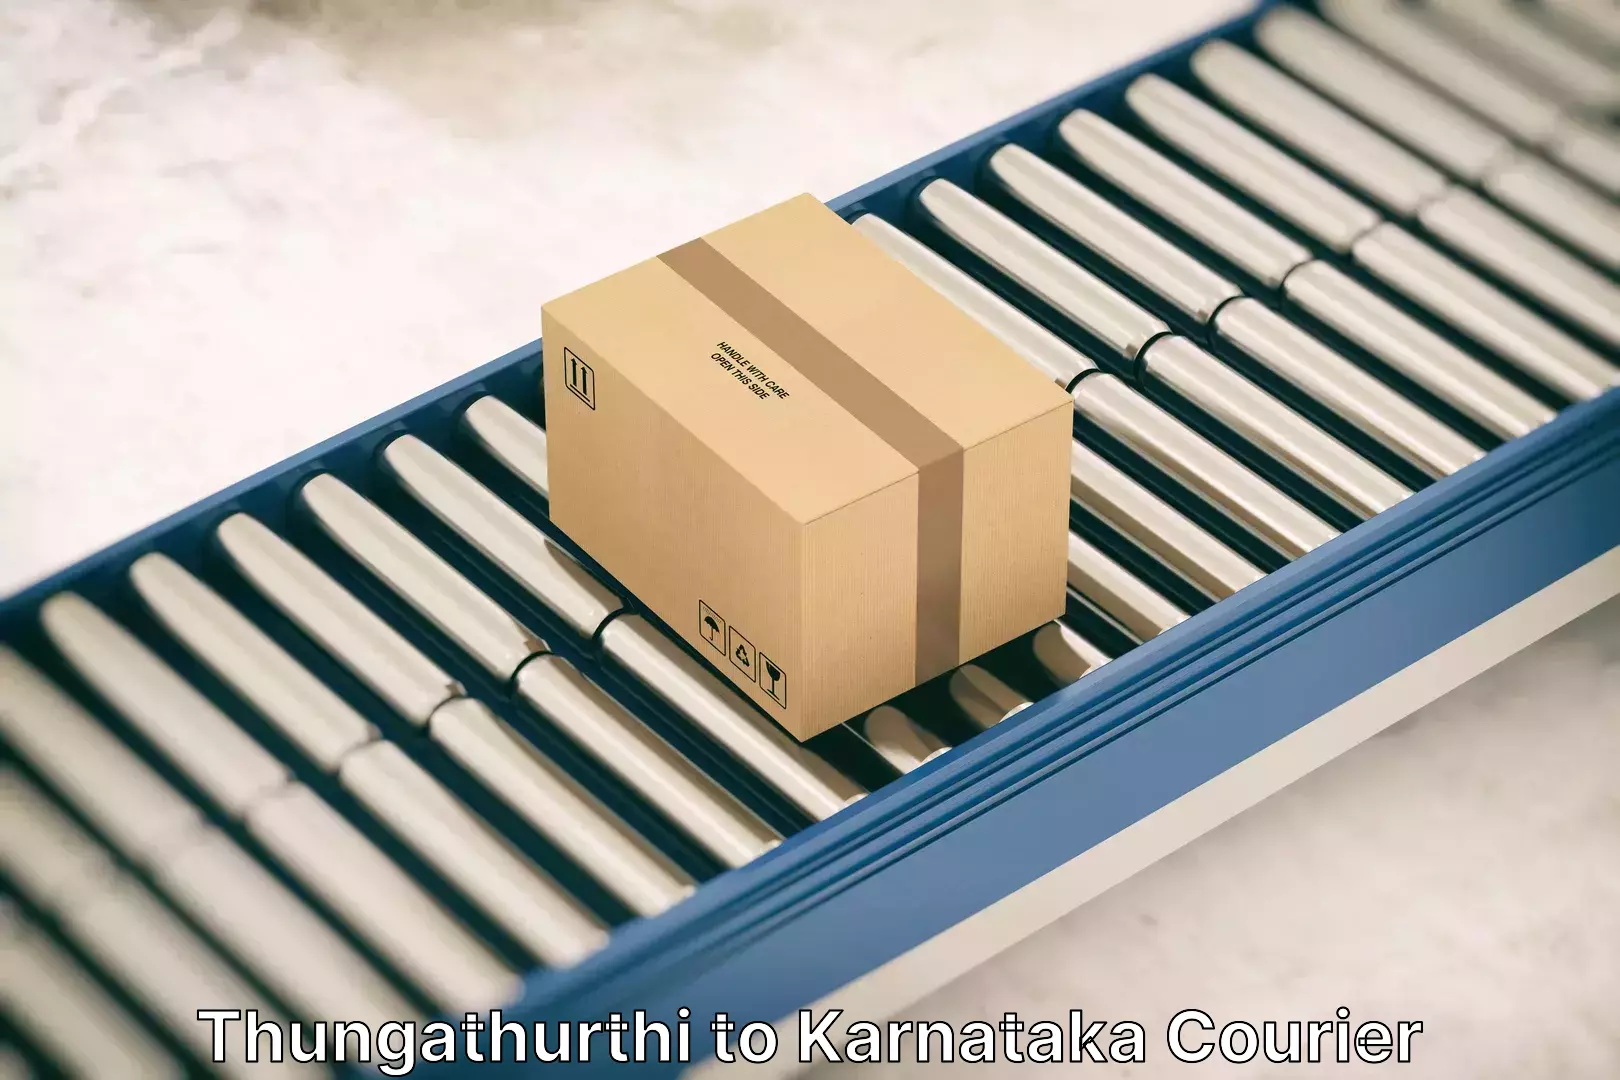 Nationwide household movers Thungathurthi to Karnataka